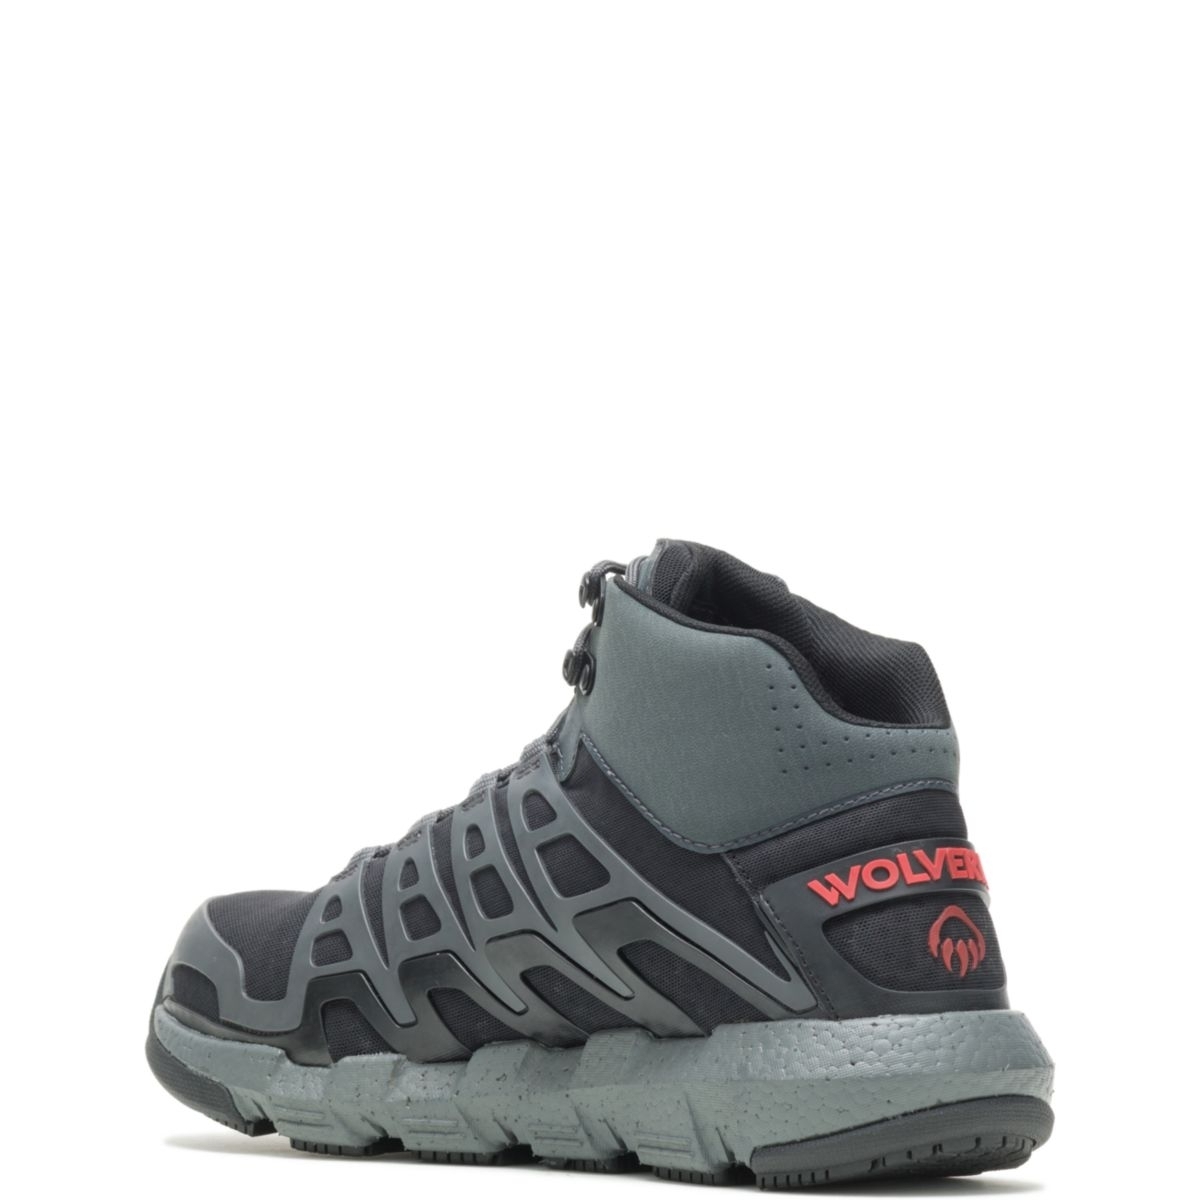 WOLVERINE Men's Rev Vent UltraSpringâ¢ DuraShocksÂ® CarbonMAXÂ® Composite Toe Work Boot Charcoal/Red - W211018 Charcoal/Red - Charcoal/Red, 14